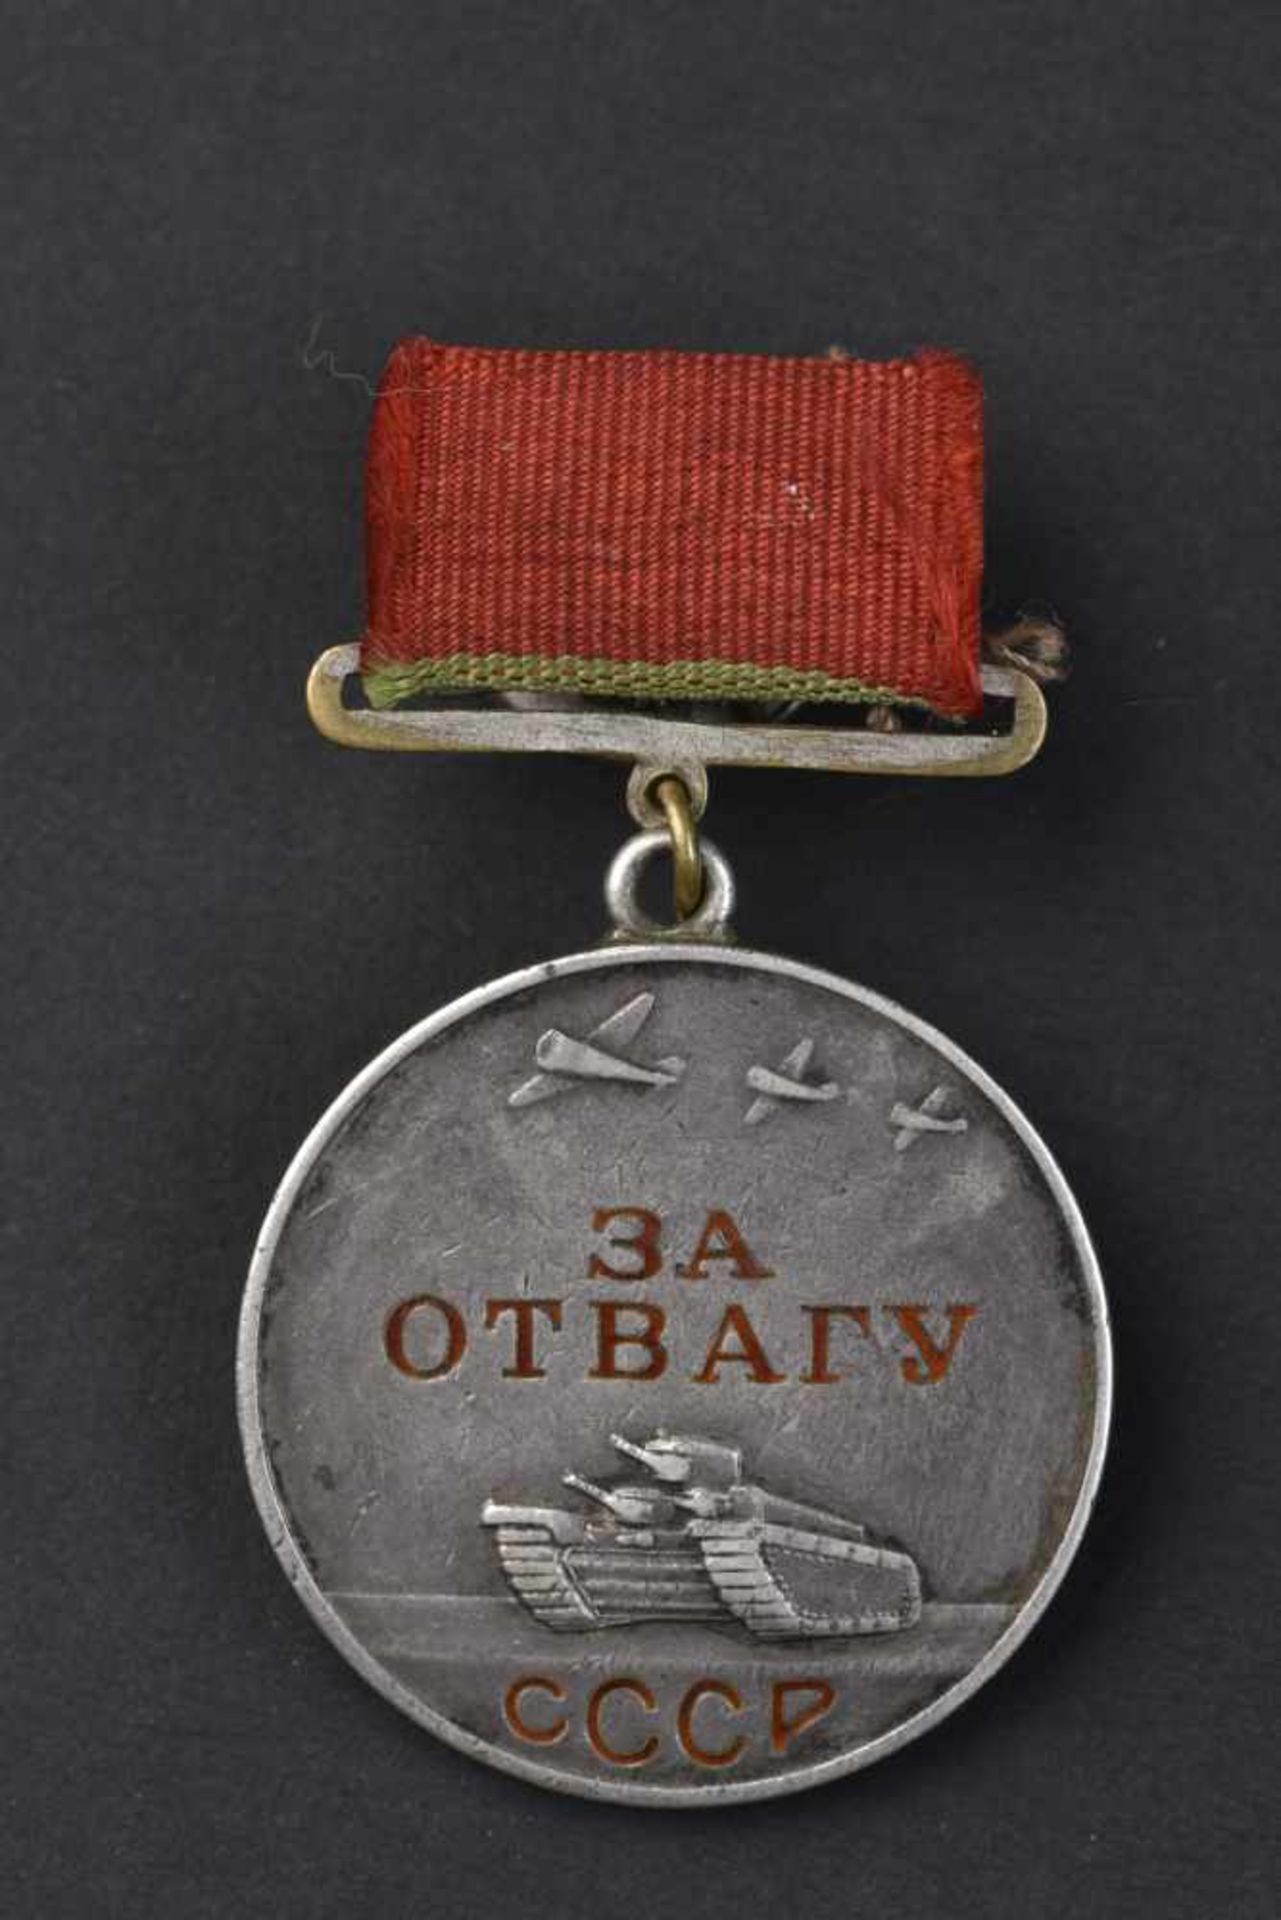 Médaille pour la Bravoure n° 15884, type 1, attribuée le 21 mars 1940 à STAVBURG PANTELEY